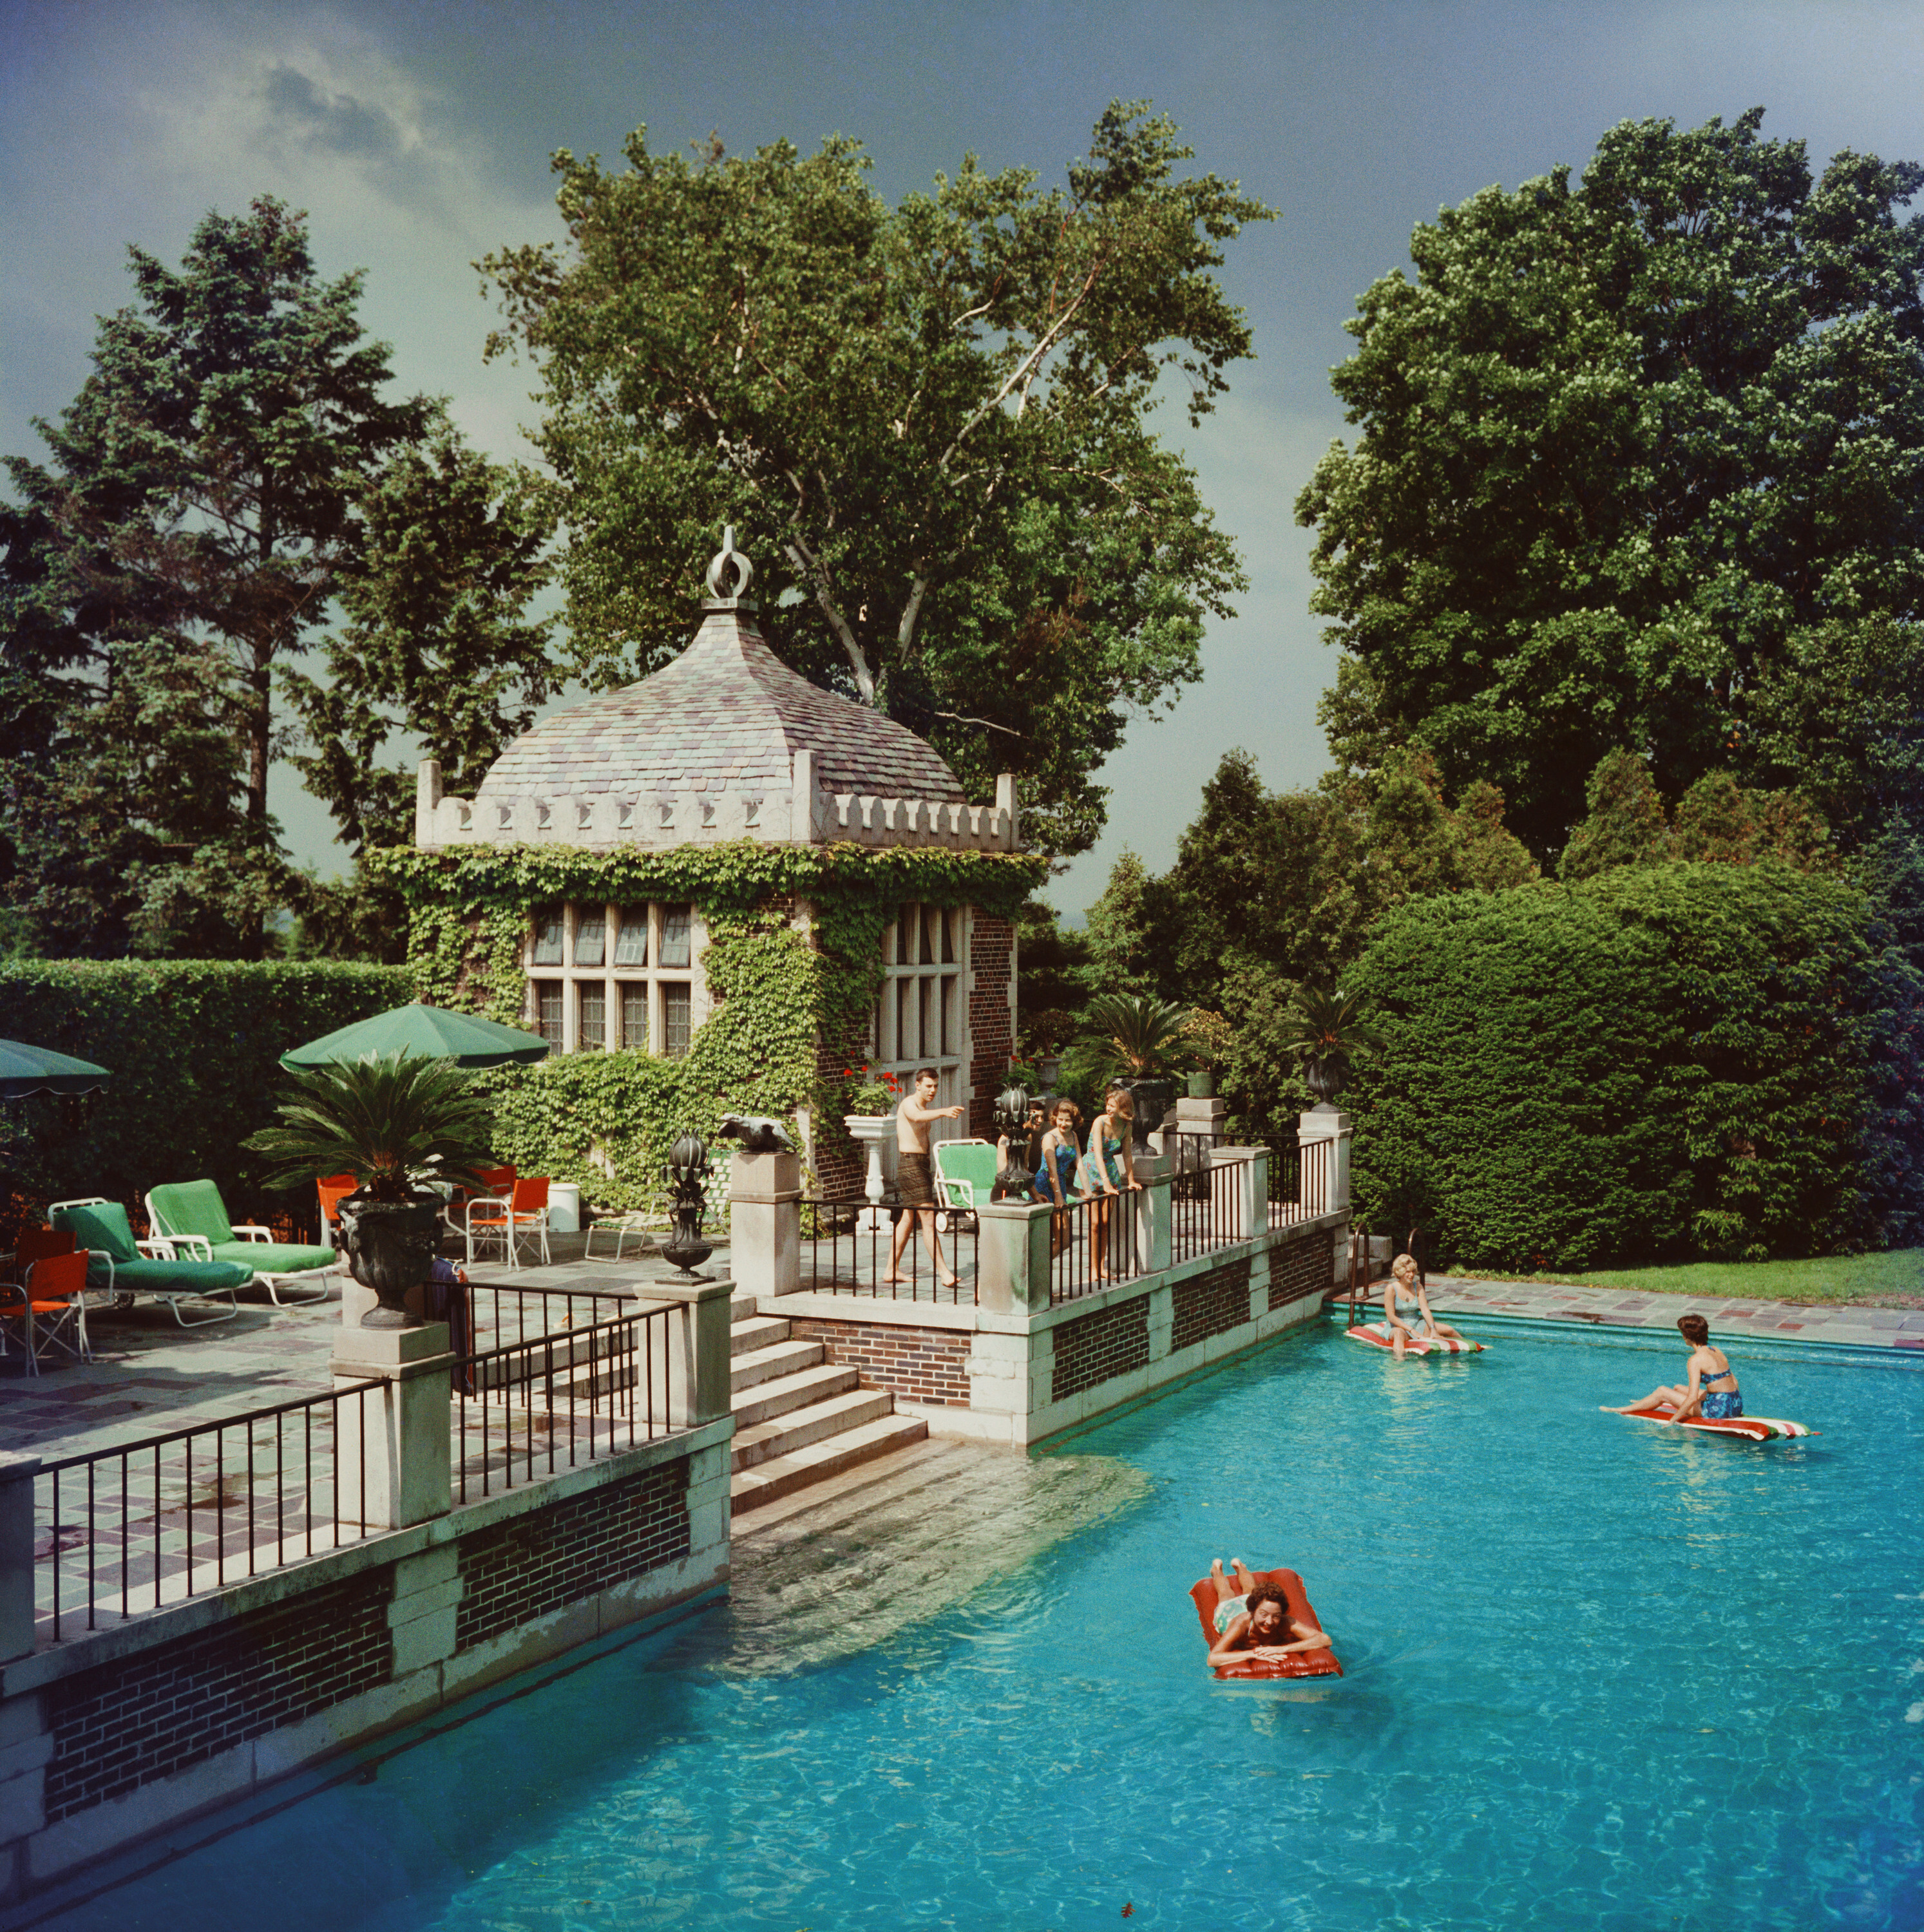 Семейный бассейн, ок. 1960 г. Фотограф Слим Ааронс